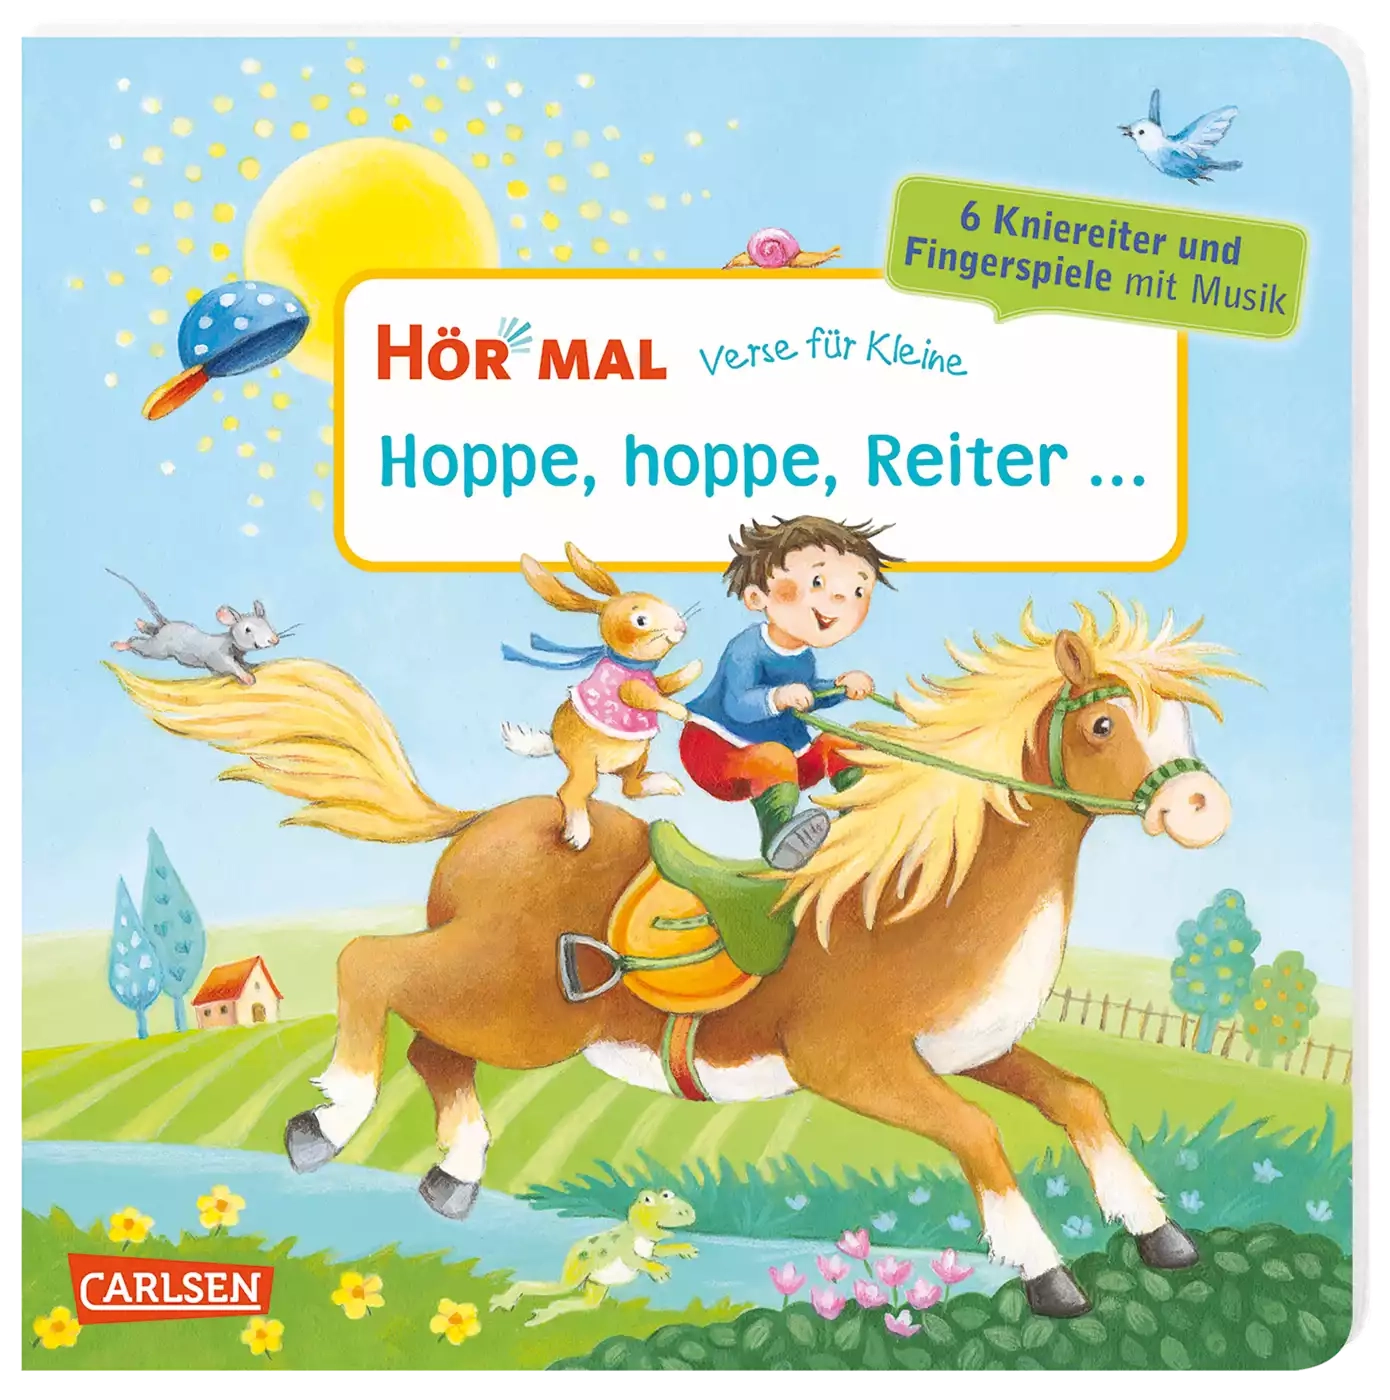 Hör mal: Verse für Kleine: Hoppe, hoppe, Reiter ... CARLSEN Mehrfarbig 2000579973109 1